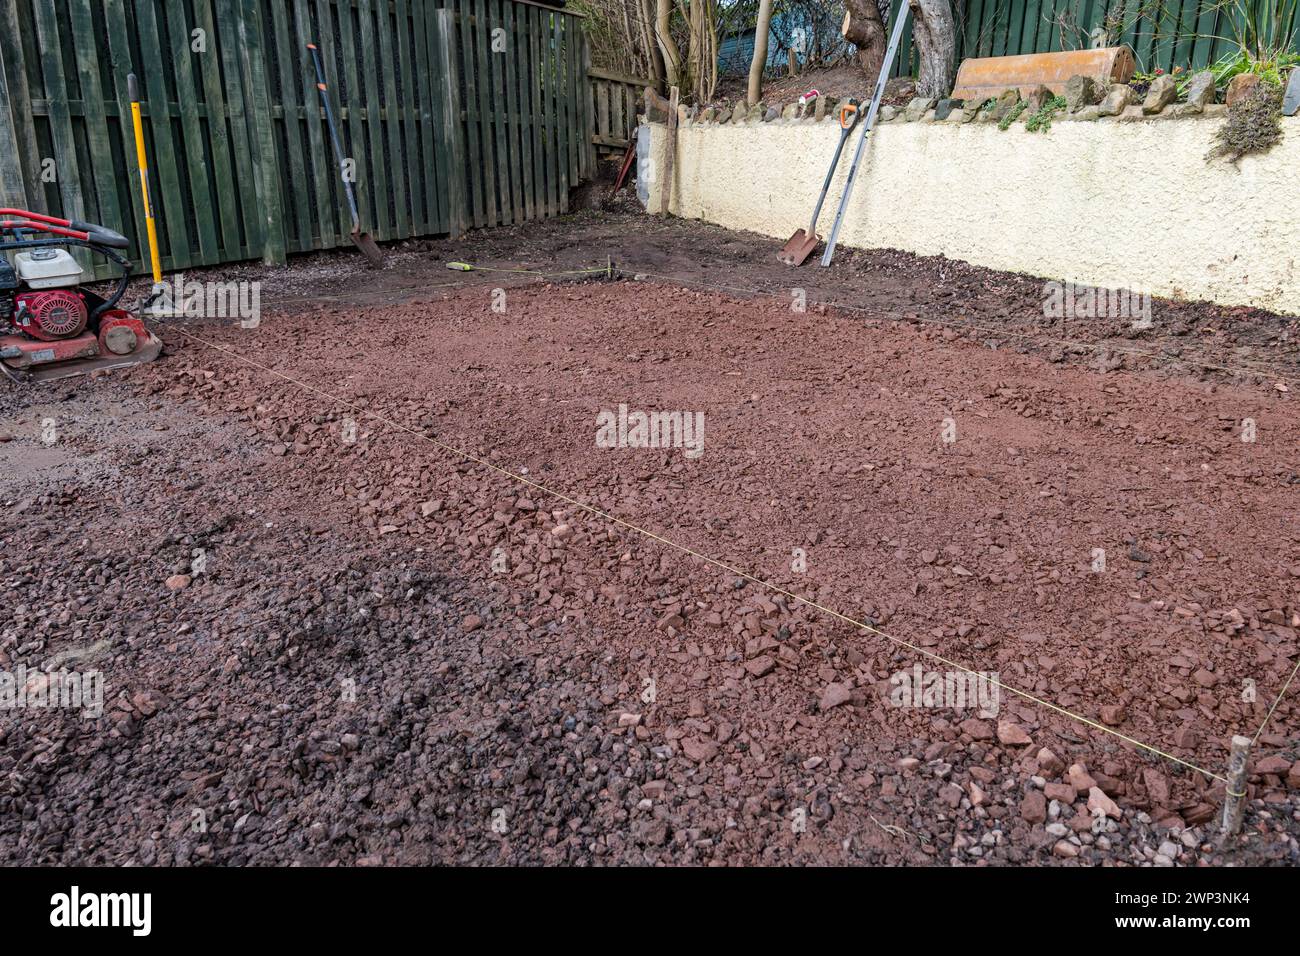 ard-Kernbasis, bereit für Platten in einer Auffahrt zum Bau eines Gartenraums, Schottland, Großbritannien Stockfoto